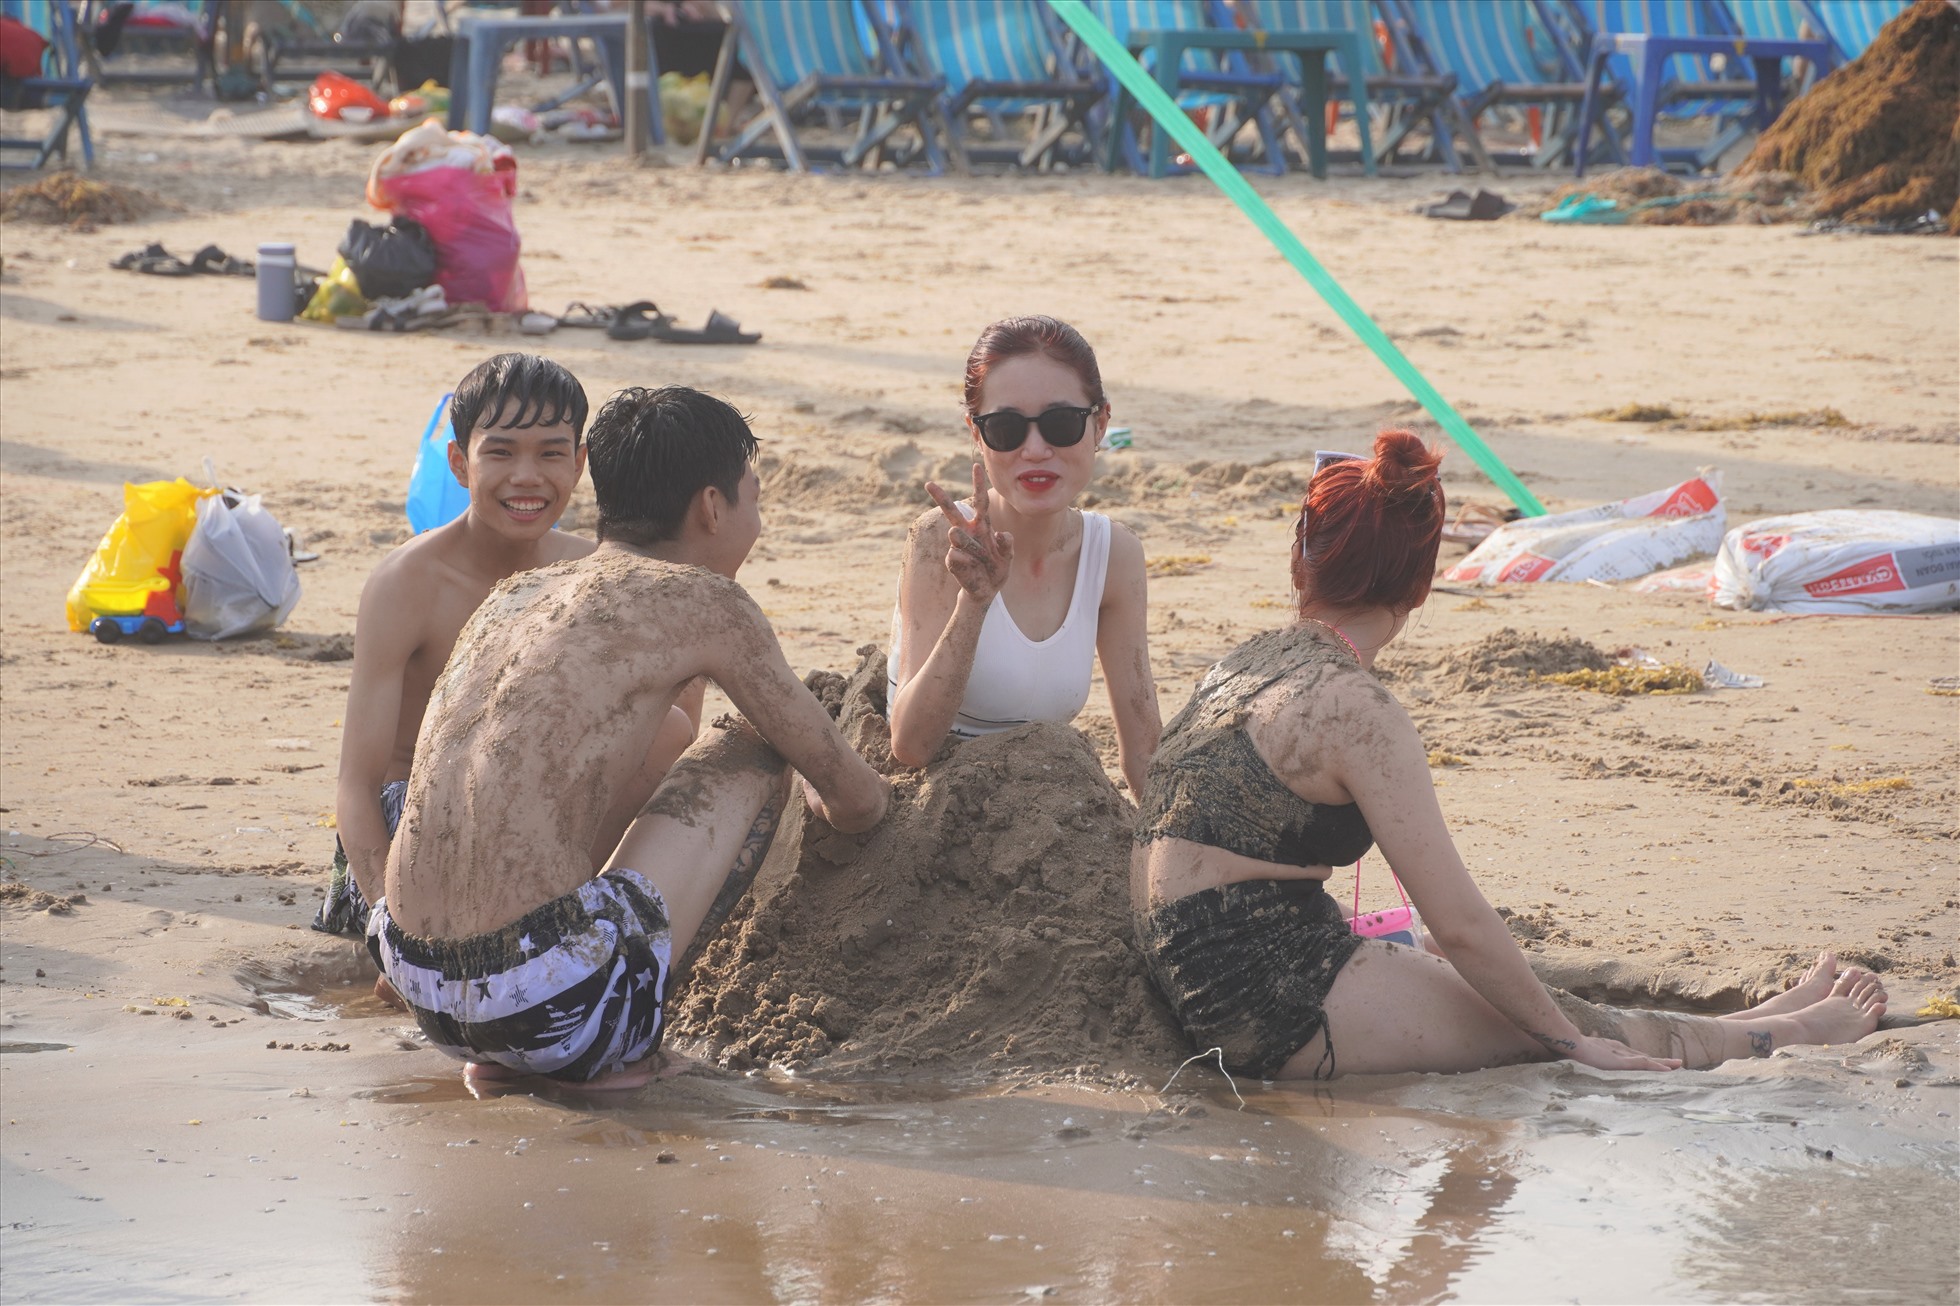 Nhiều du khách sau khi vùng vẫy trong làn nước mát, đã lên bờ nghỉ ngơi, chơi đùa nhẹ trên bãi cát. Ảnh: Thành An